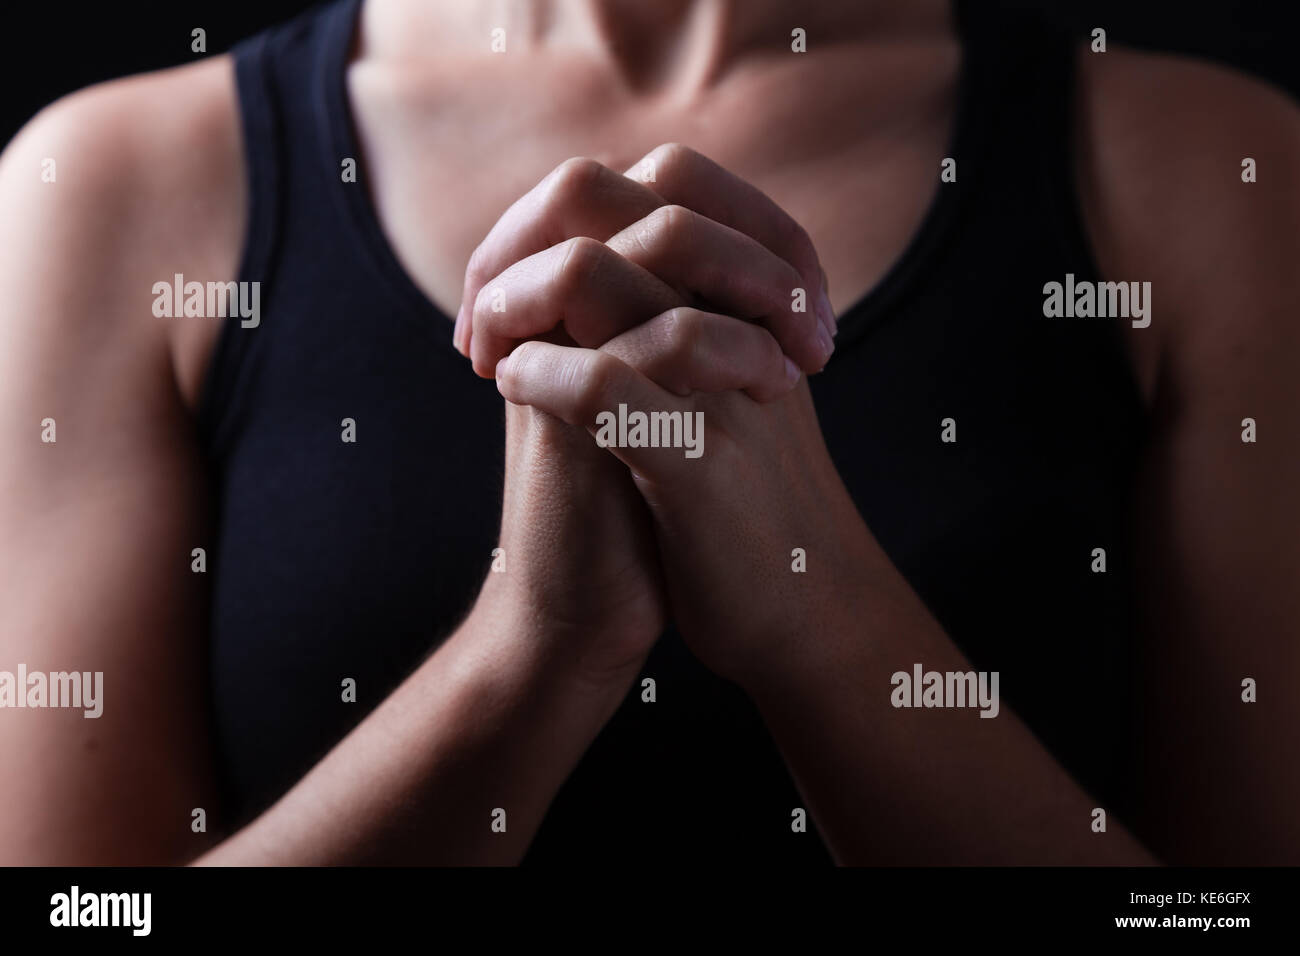 Die Hände der treuen Frau zu beten, die Hände gefaltet, interlaced Finger in Anbetung zu Gott/beten Gebet gefaltet Christliche katholische Verehrer Anbetung Stockfoto